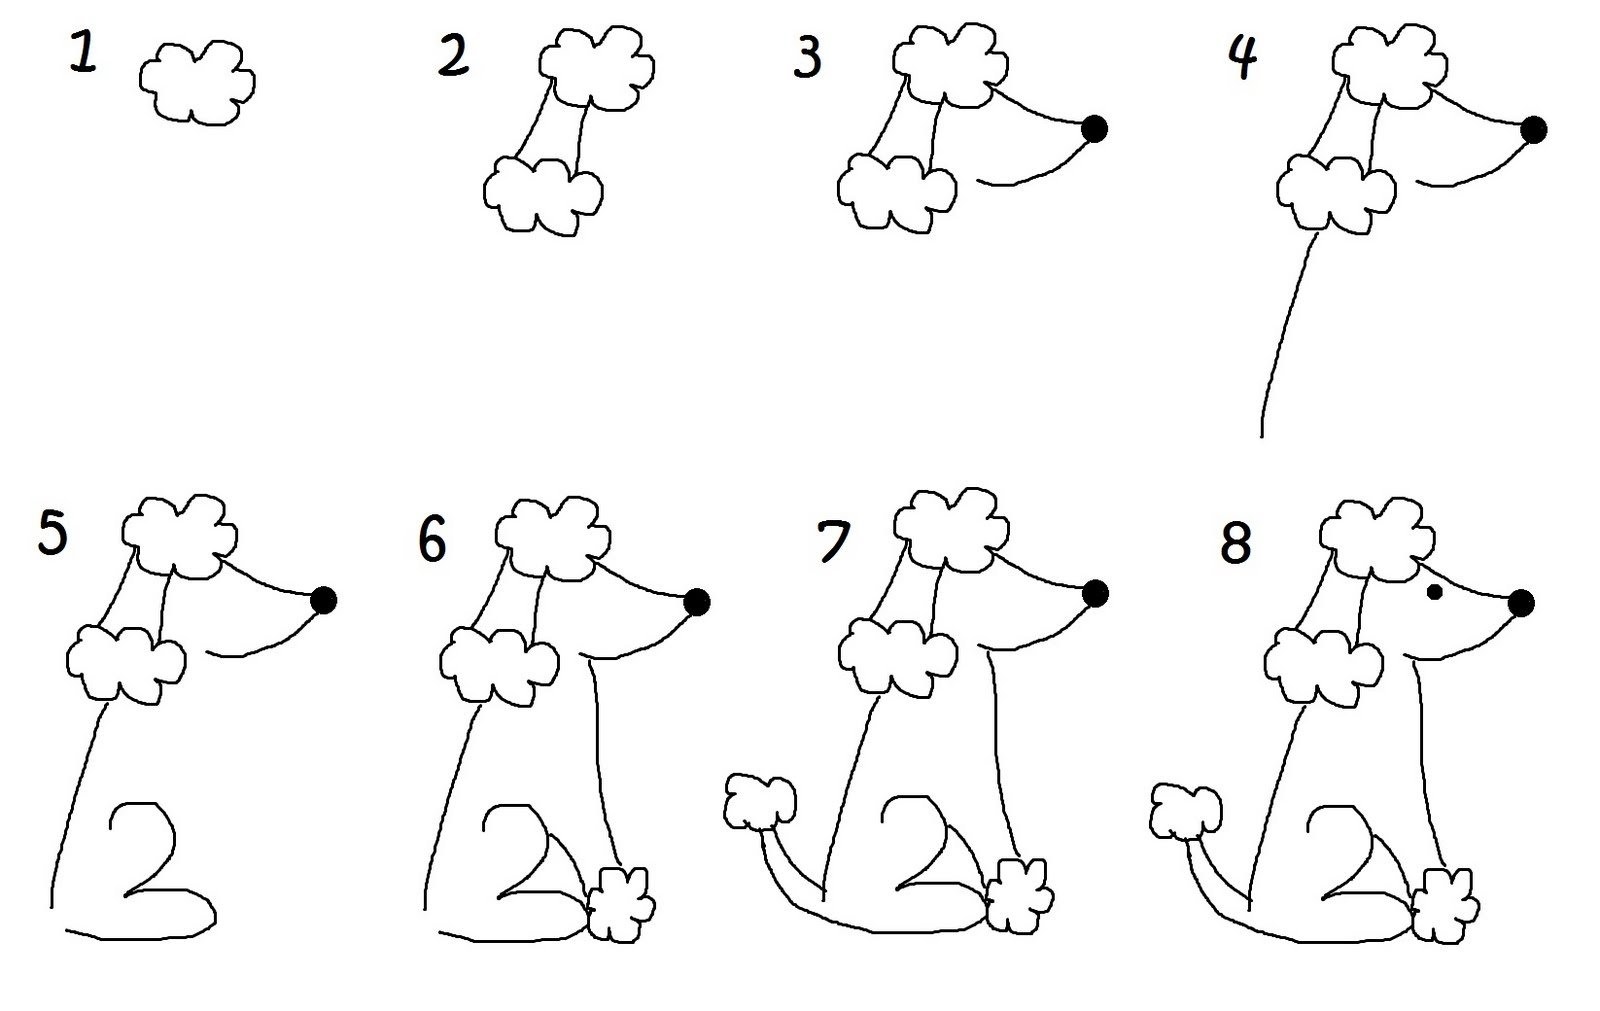 Рисуем собаку с детьми. Последовательное рисование для детей. Рисование для дошкольников. Схемы рисования для дошкольников. Пошаговое рисование для детей.